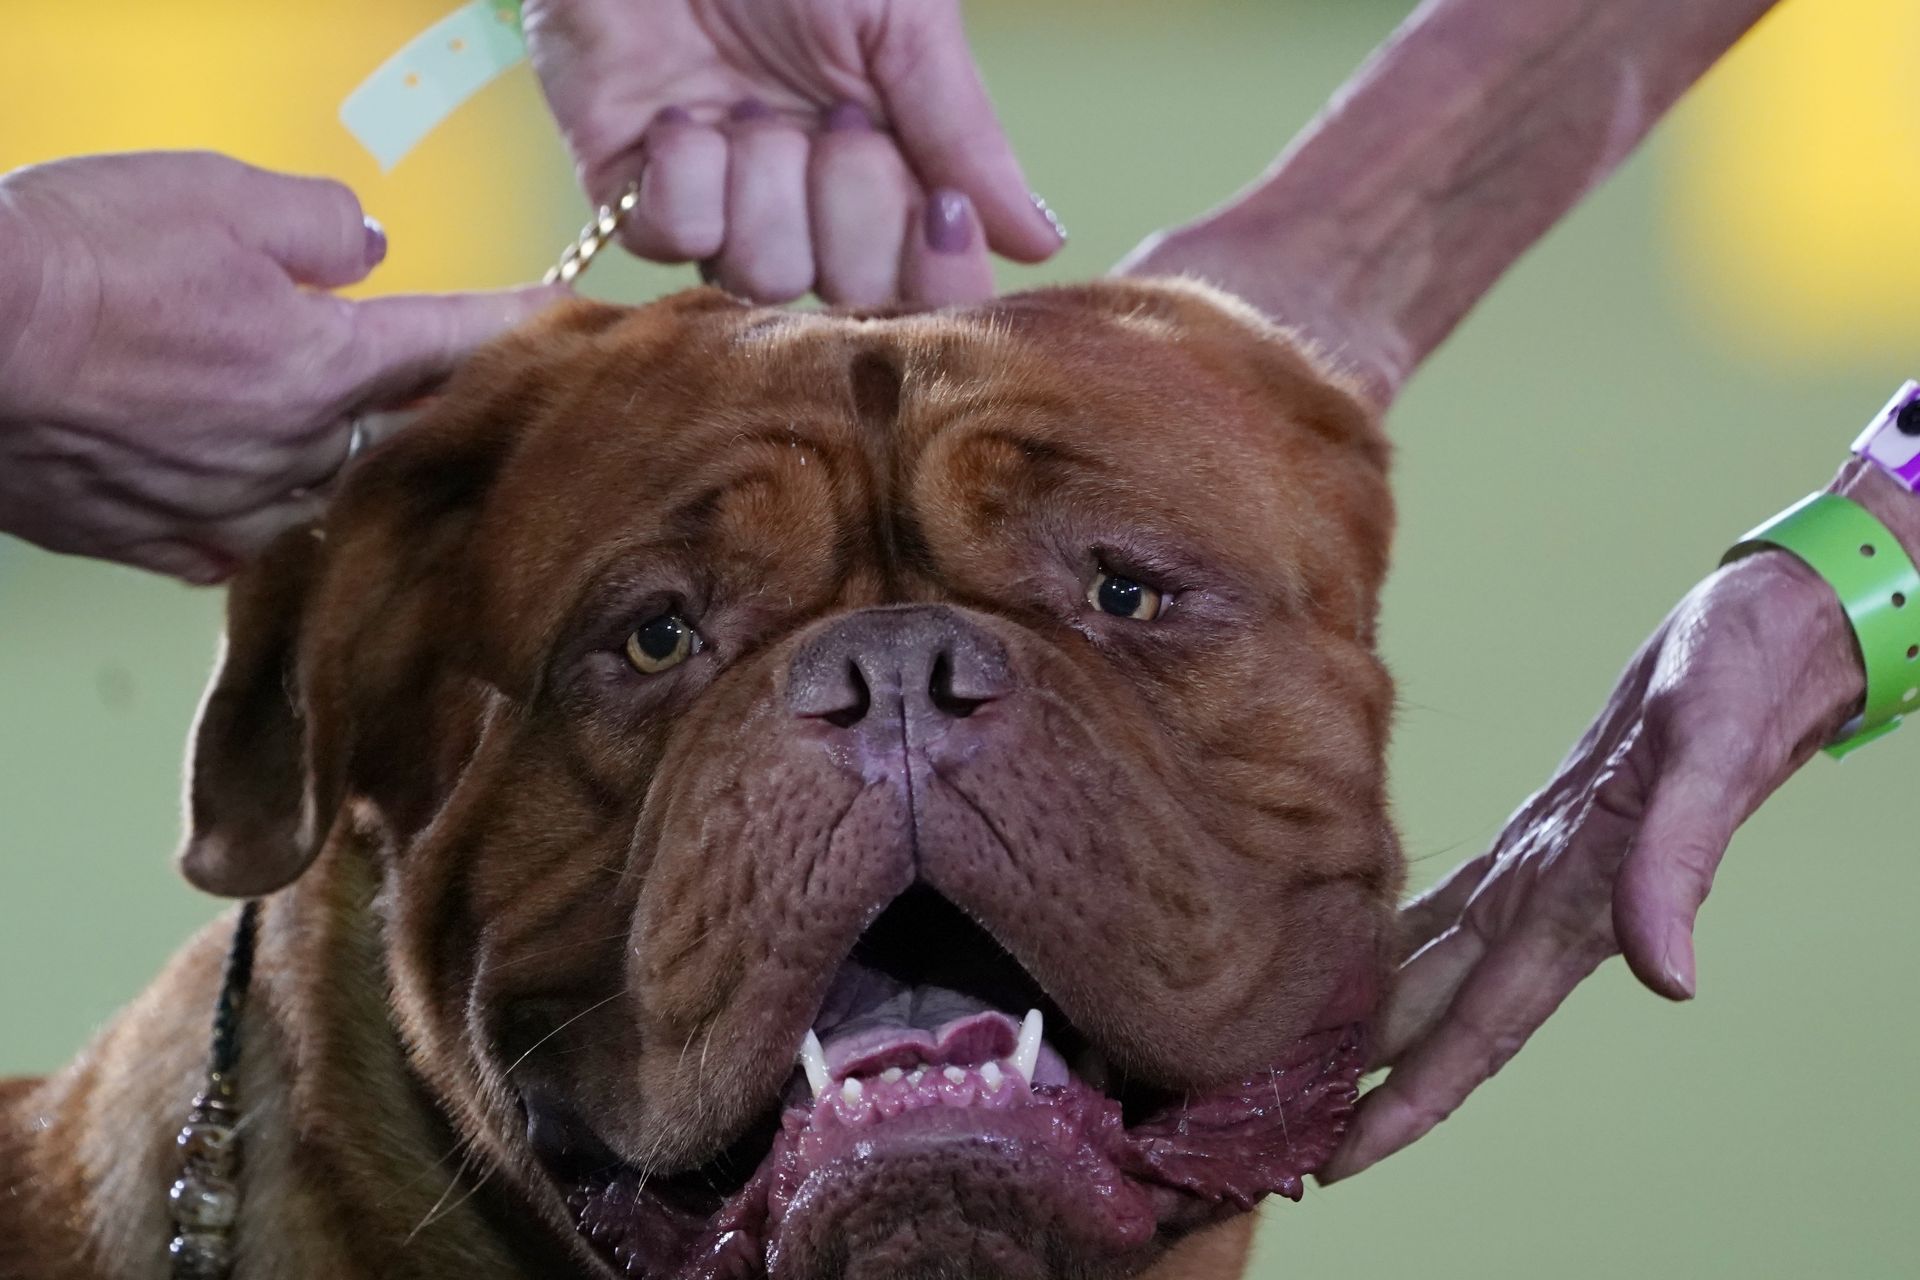 13 юни 2021 г. - Dogue de Bordeaux (Кучето от Бордо) е представено пред съдия в категорията на работната група на изложението за кучета в Уестминстърския киноложки клуб в Таритаун, Ню Йорк.